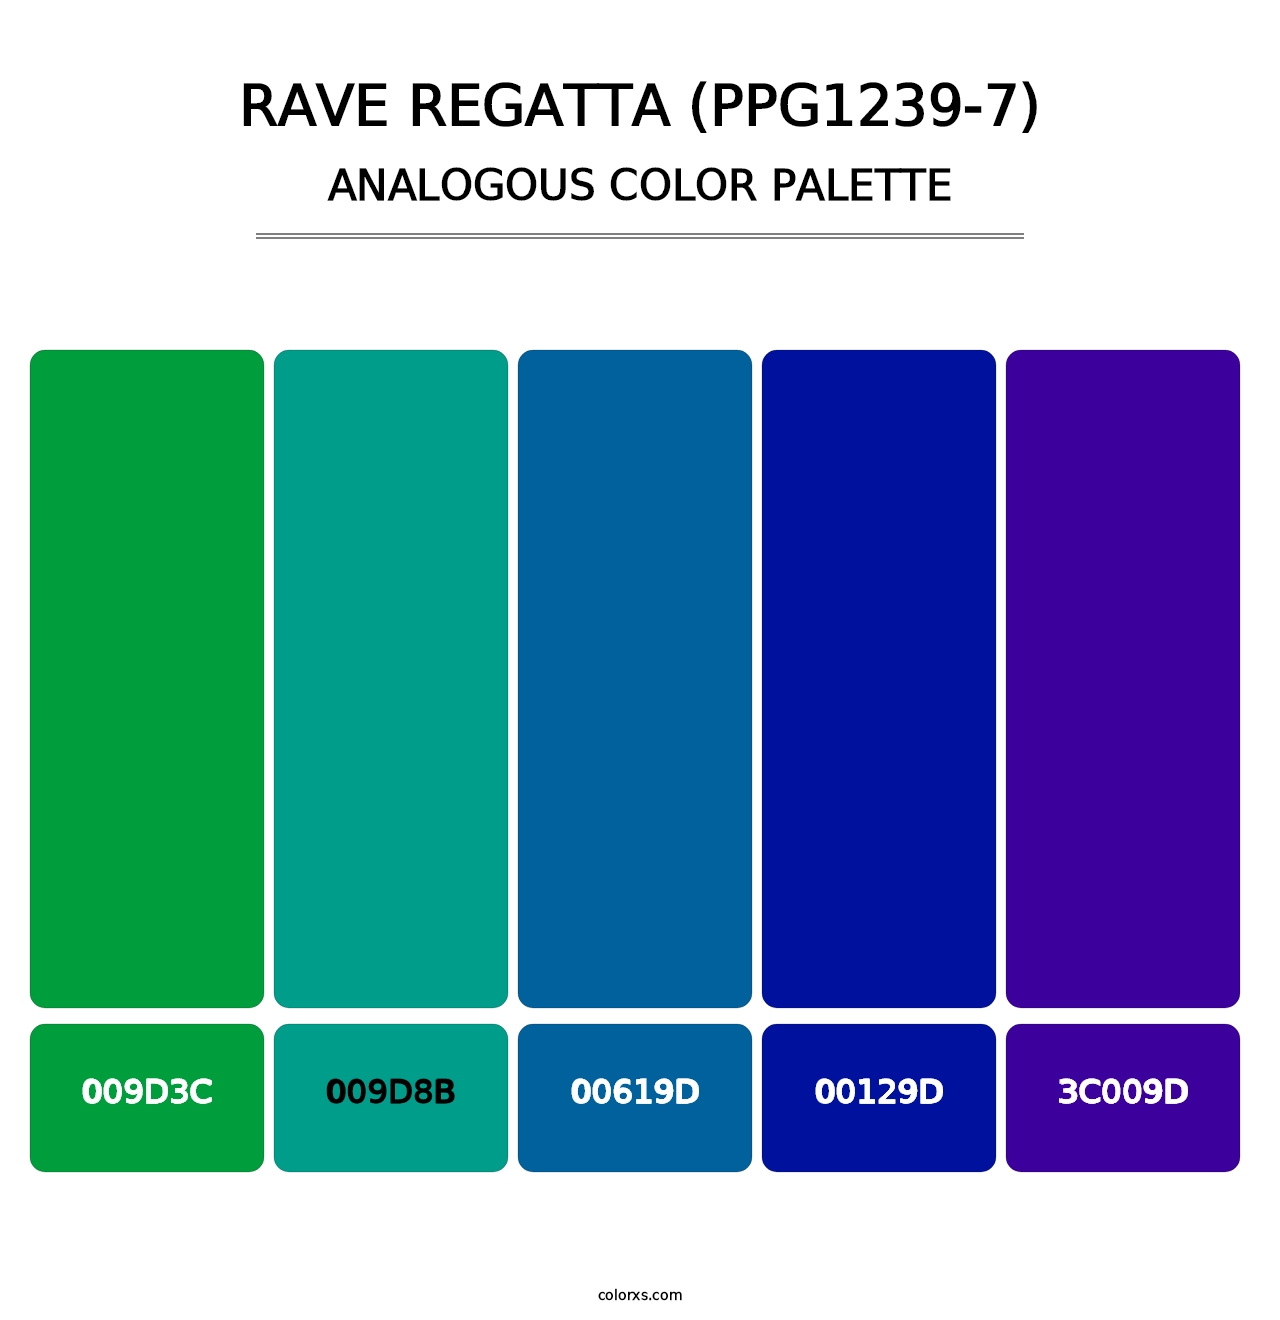 Rave Regatta (PPG1239-7) - Analogous Color Palette